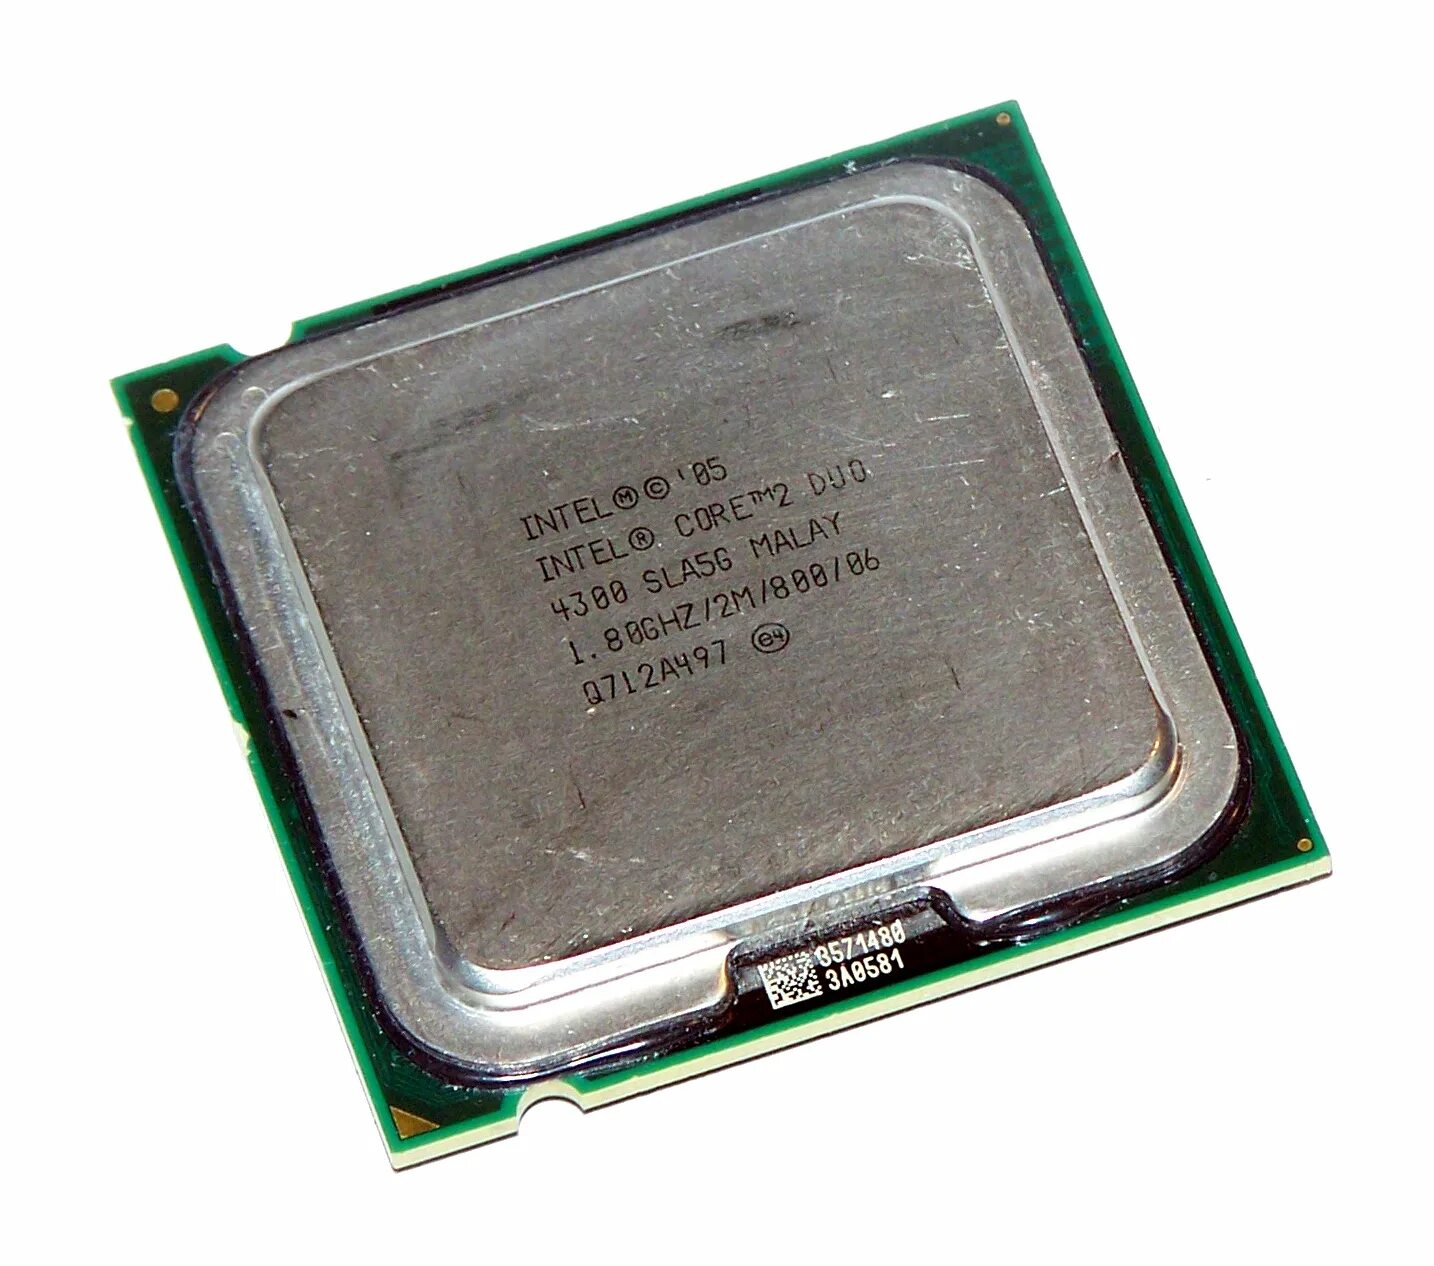 Intel Core 2 Duo e4300. Intel Core 2 Duo e4300 Allendale lga775, 2 x 1800 МГЦ. Core 2 Duo 4300. Процессор Интел кор 2 дуо.